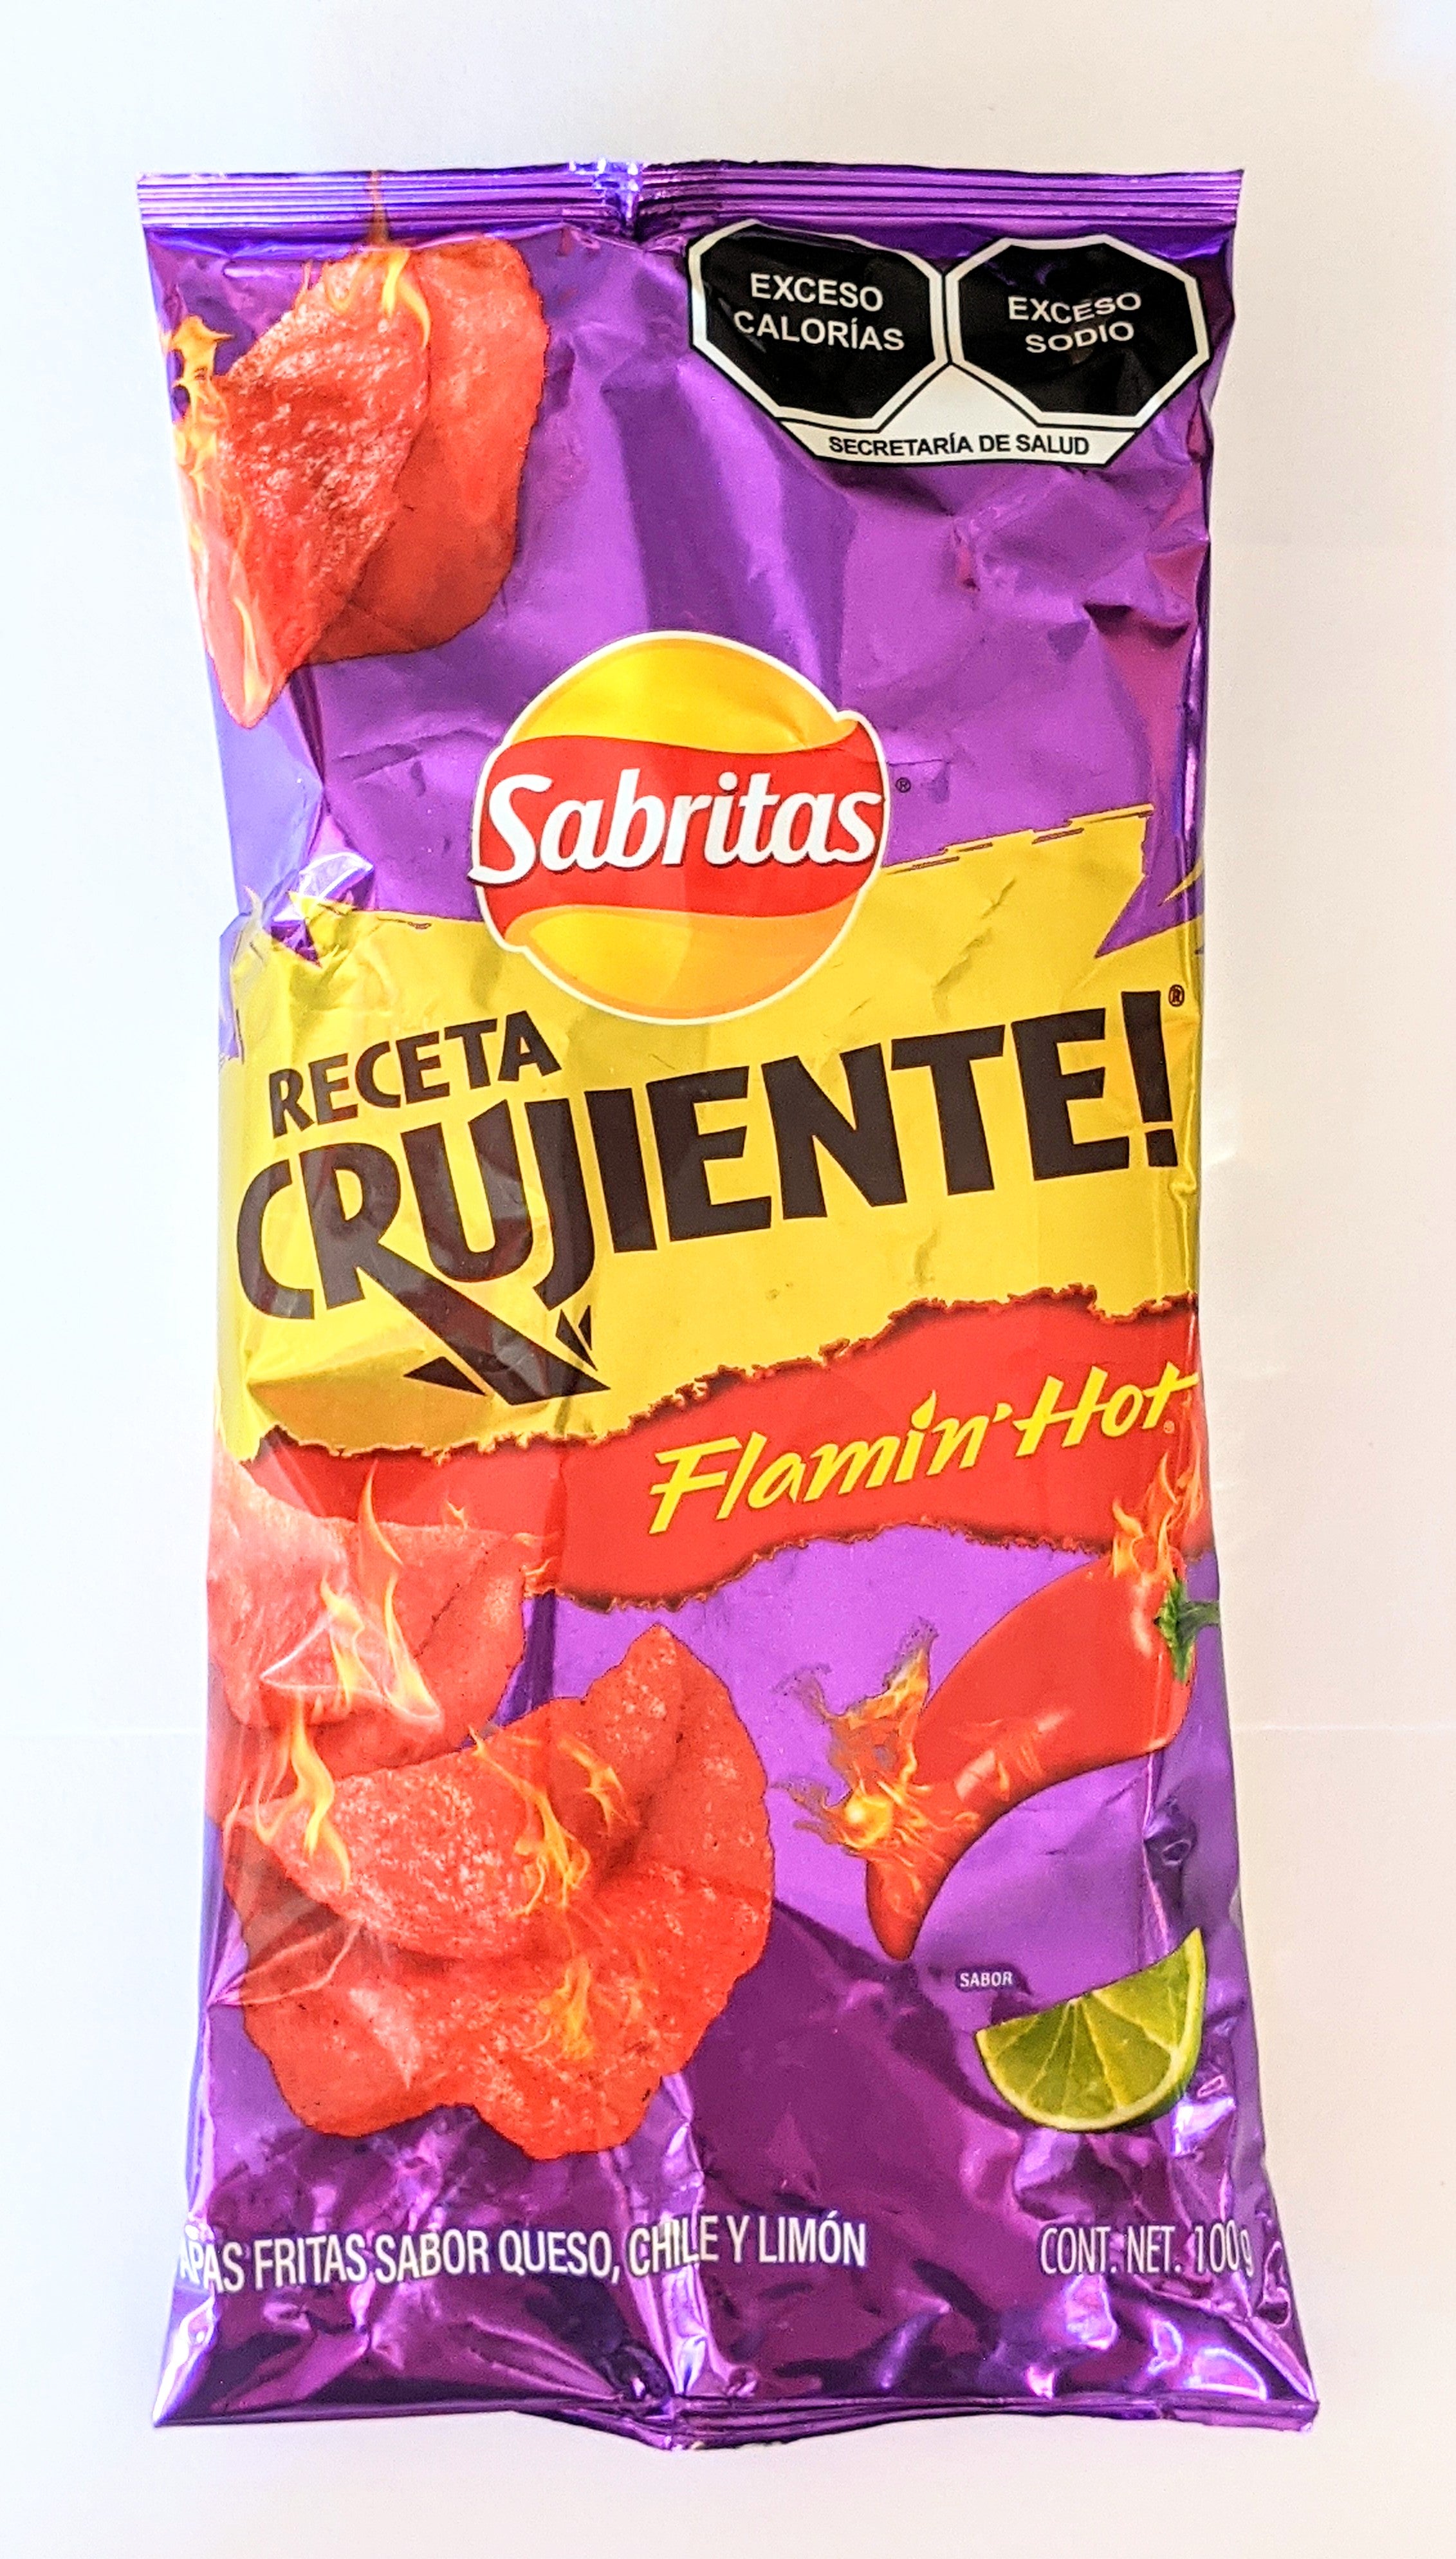 Sabritas Cheetos Xtra Flamin Hot, Mexican Chips 145g